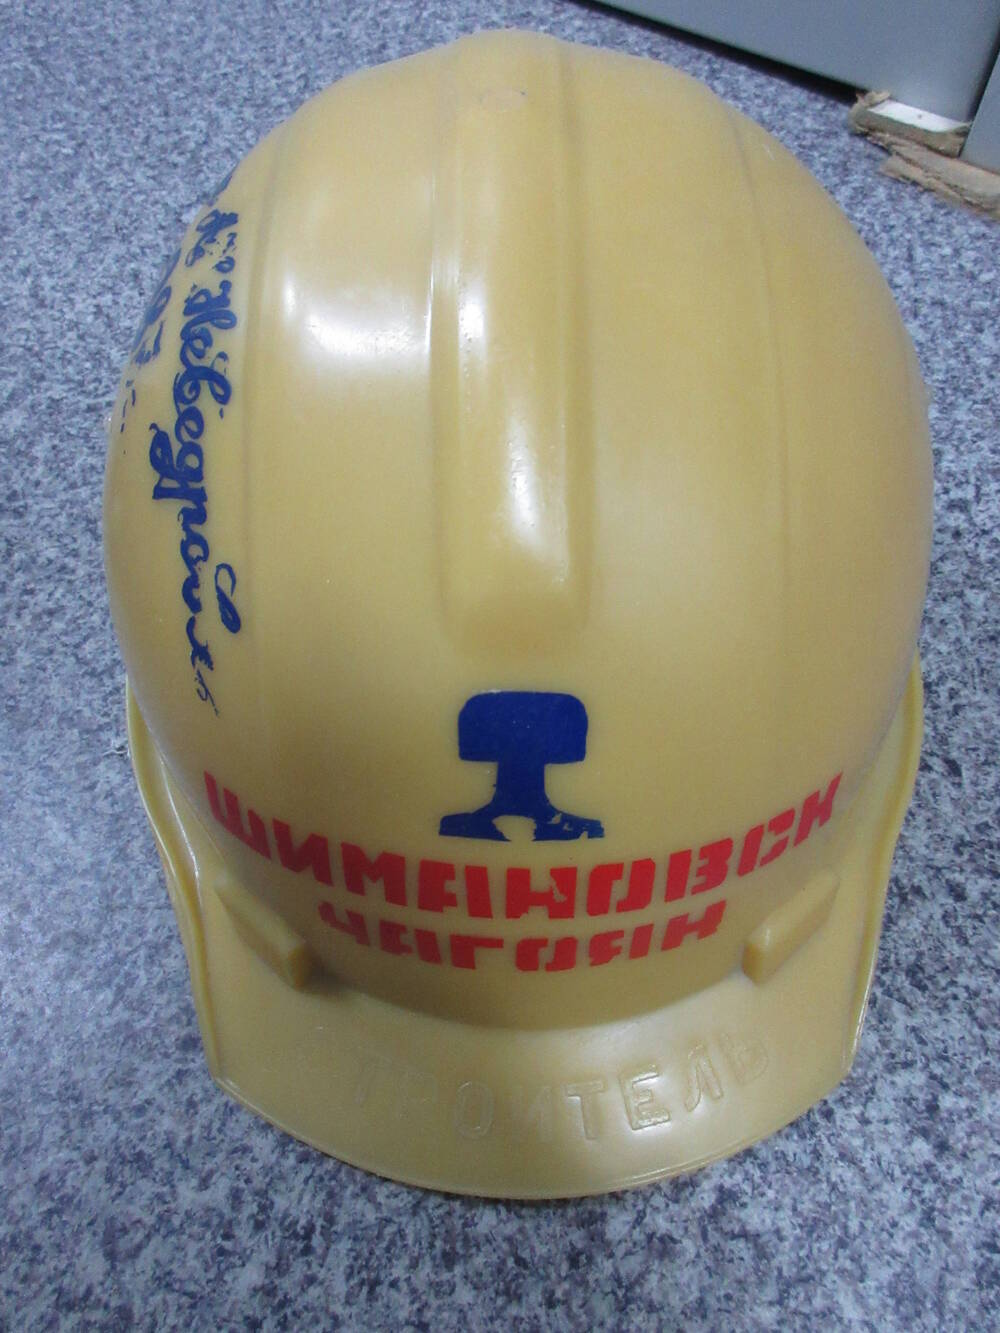 Каска строительная Шимановск - Чагоян. Бригада А. Неведрова 1987 г.